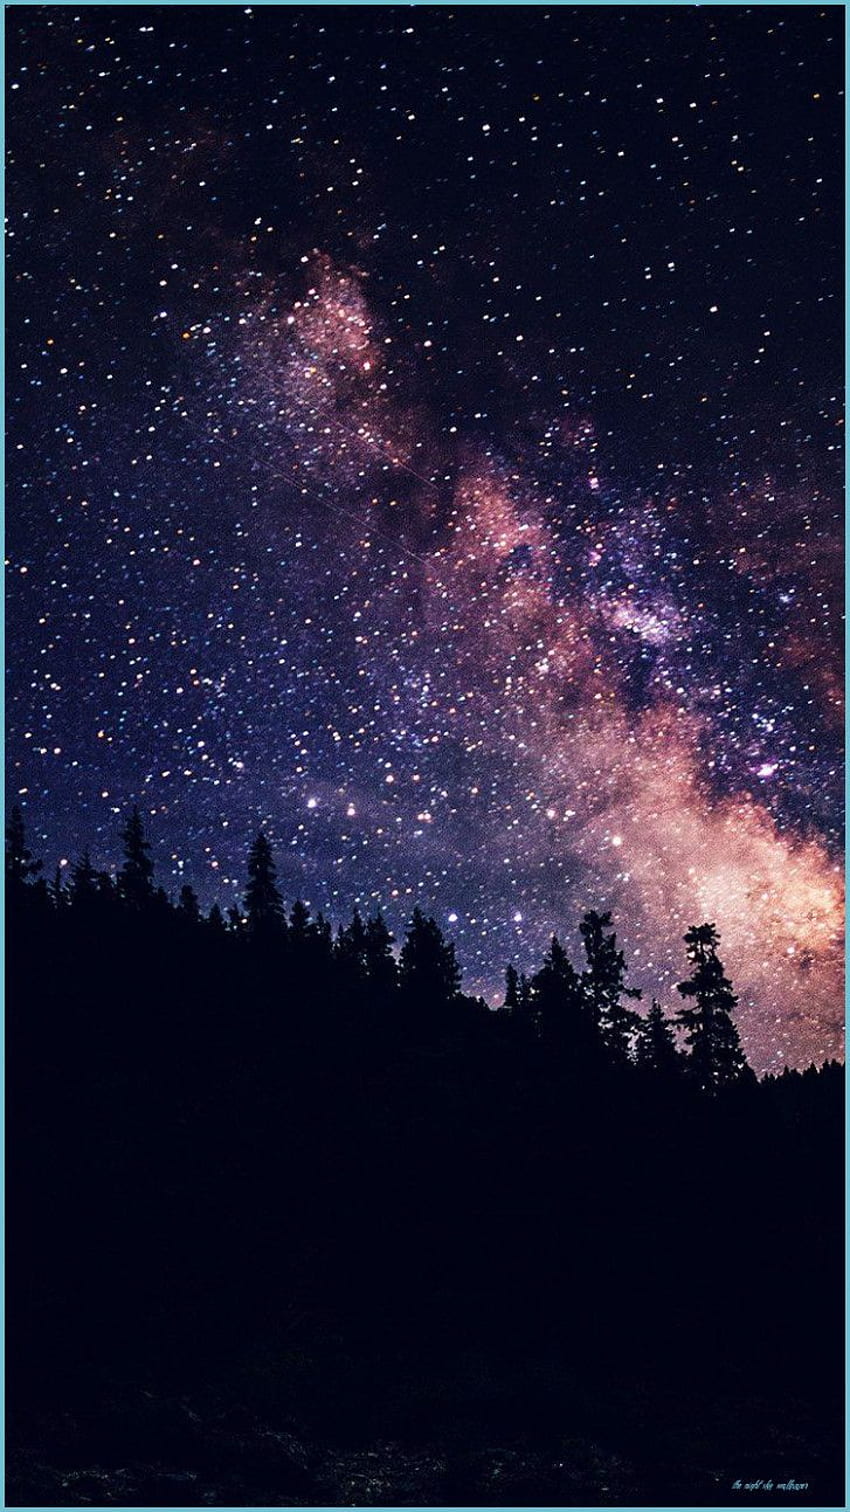 Night Sky Stars Wallpaper